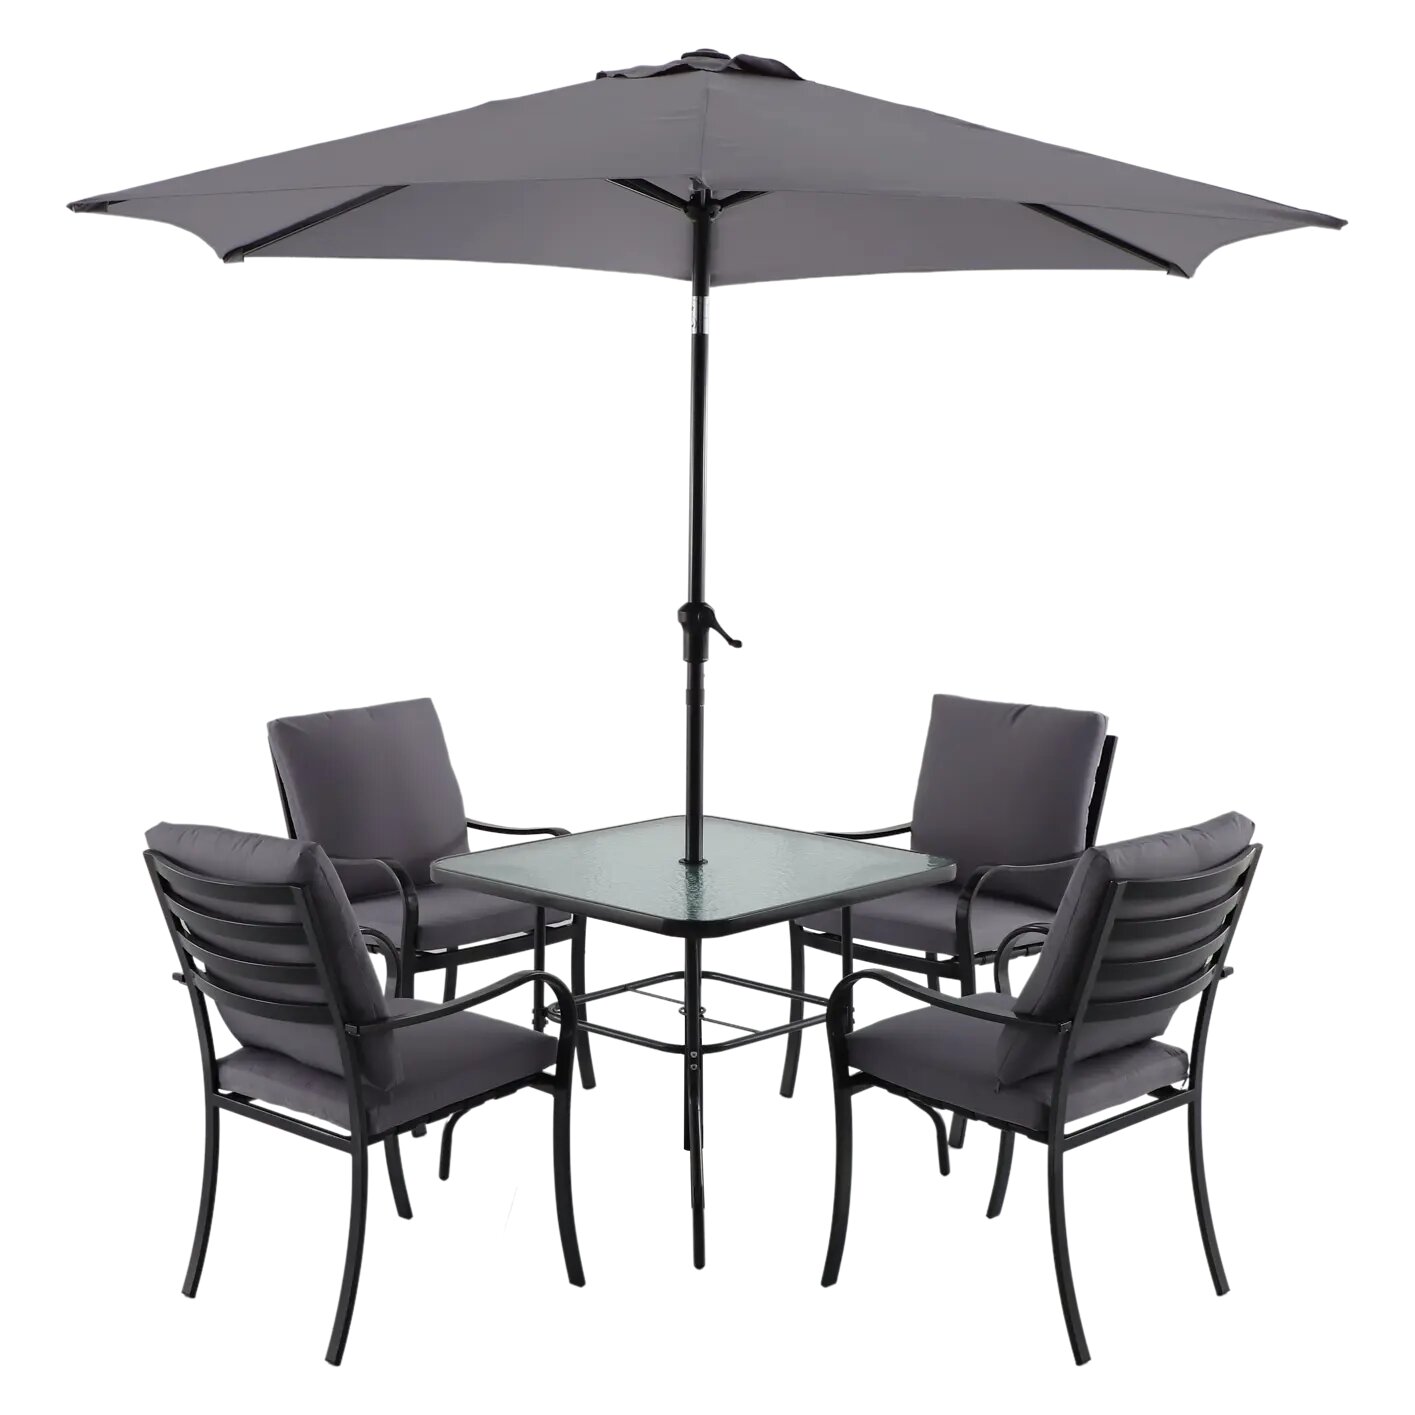 Набор садовой мебели Naterial Rono сталь/полиэстер/стекло темно-серый: стол 4 кресла и зонт